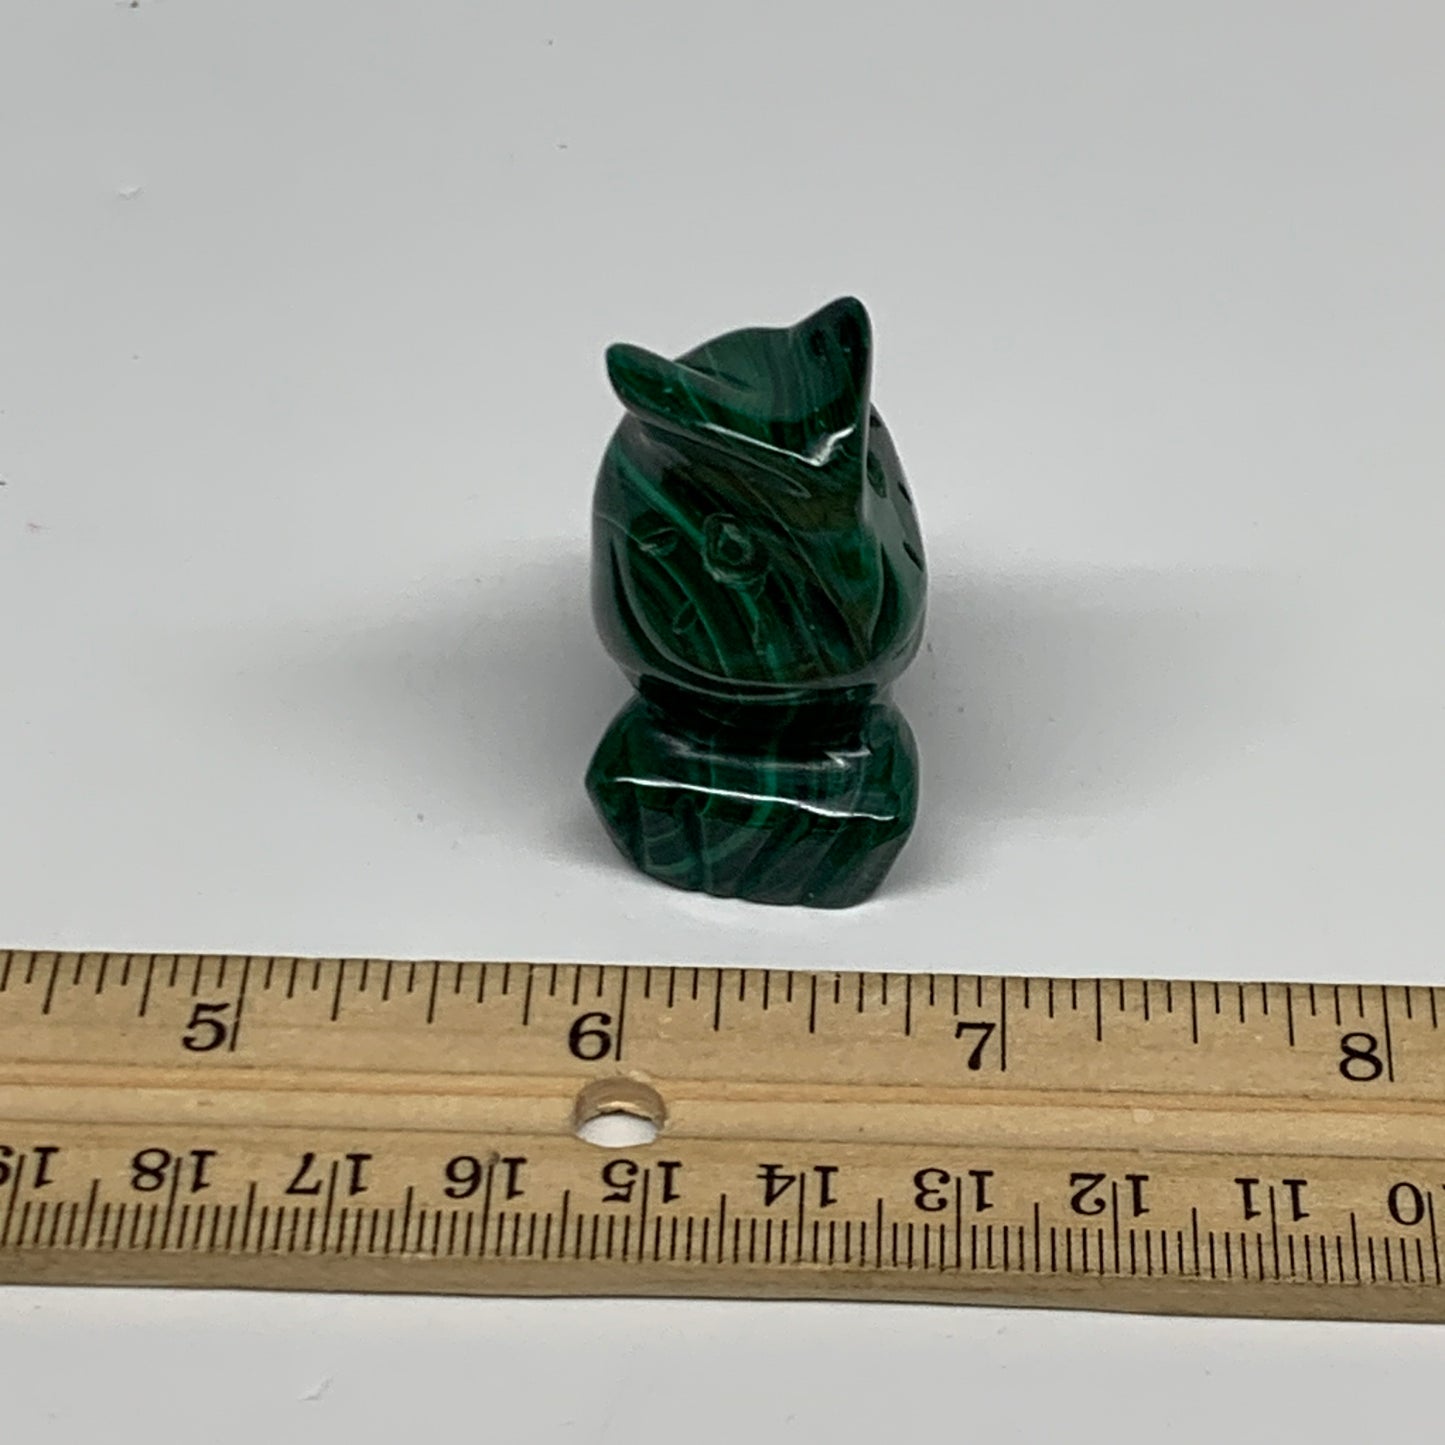 67.3g, 1.7"x1.4"x0.9" Natural Solid Malachite Penguin Figurine @Congo, B32748